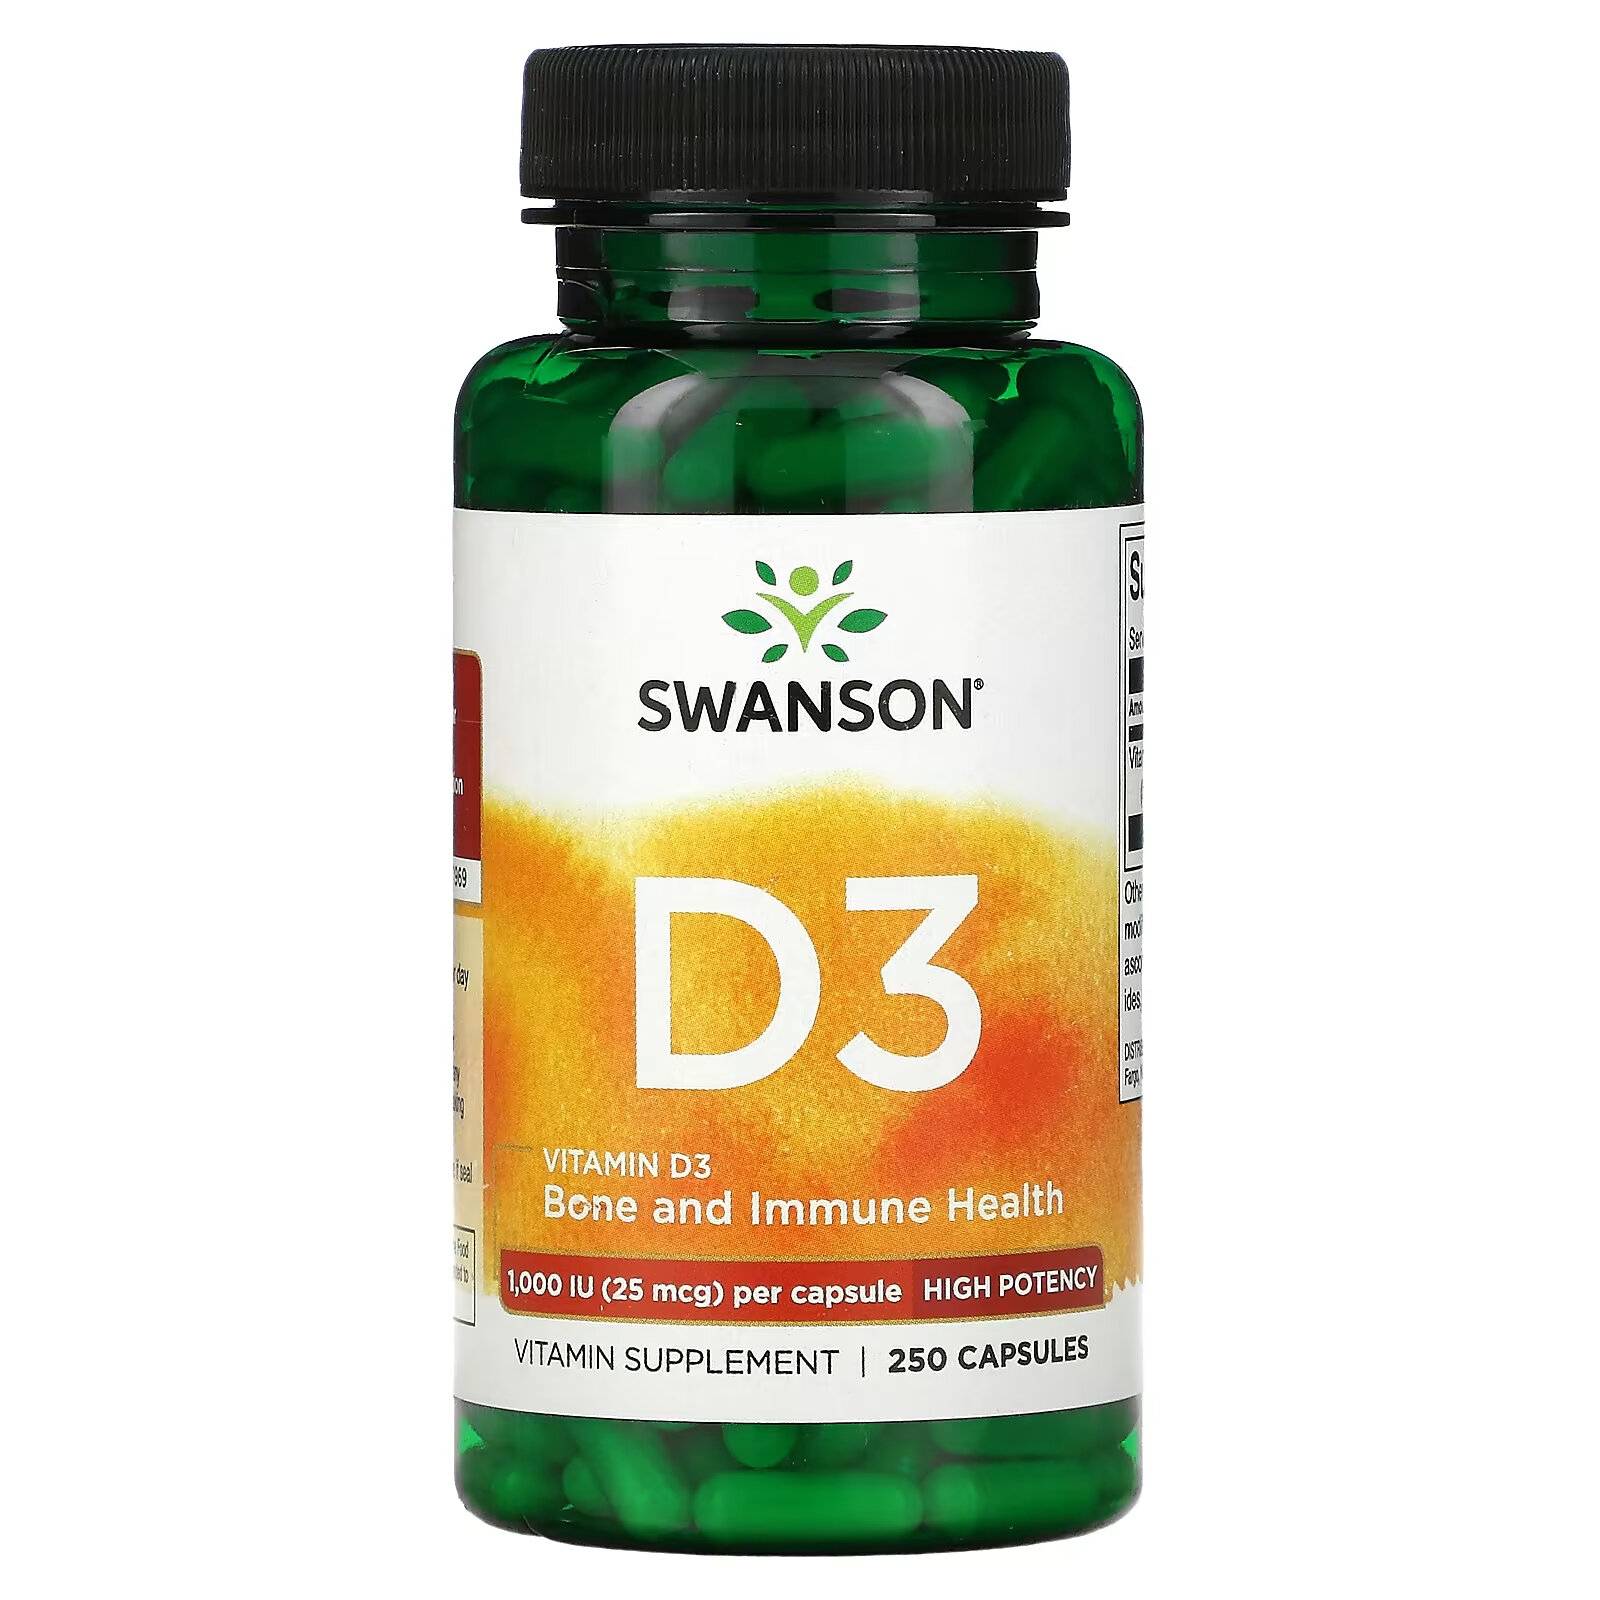 doctor s best витамин d3 25 мкг 1000 ме 180 капсул Swanson, Витамин D3, 1000 МЕ (25 мкг), 250 капсул